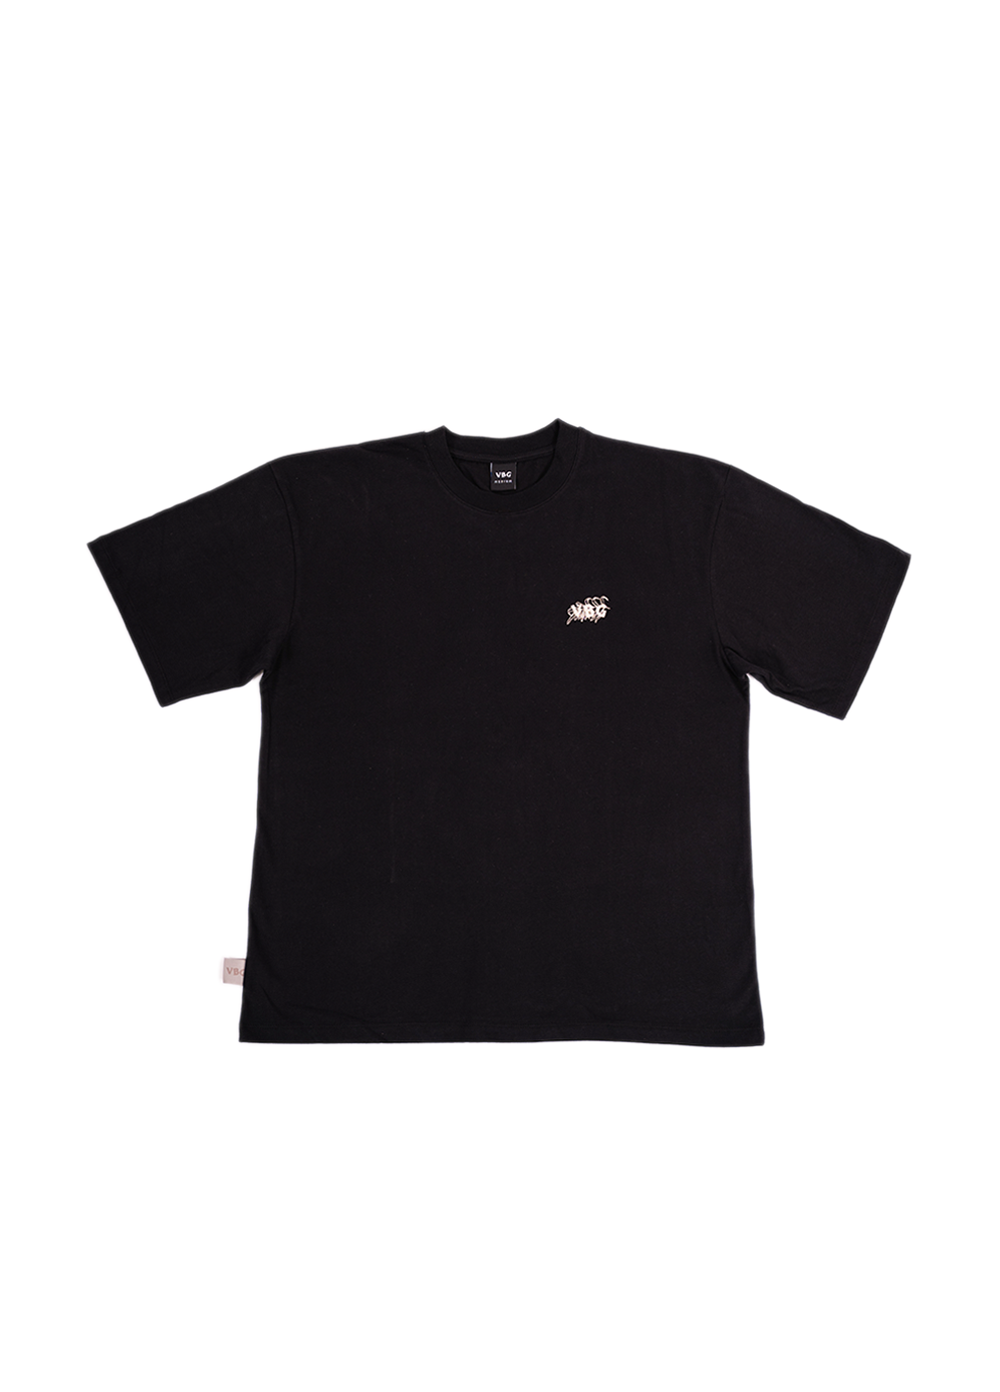 "Leaf Stitch" T-Shirt - Black - VBG